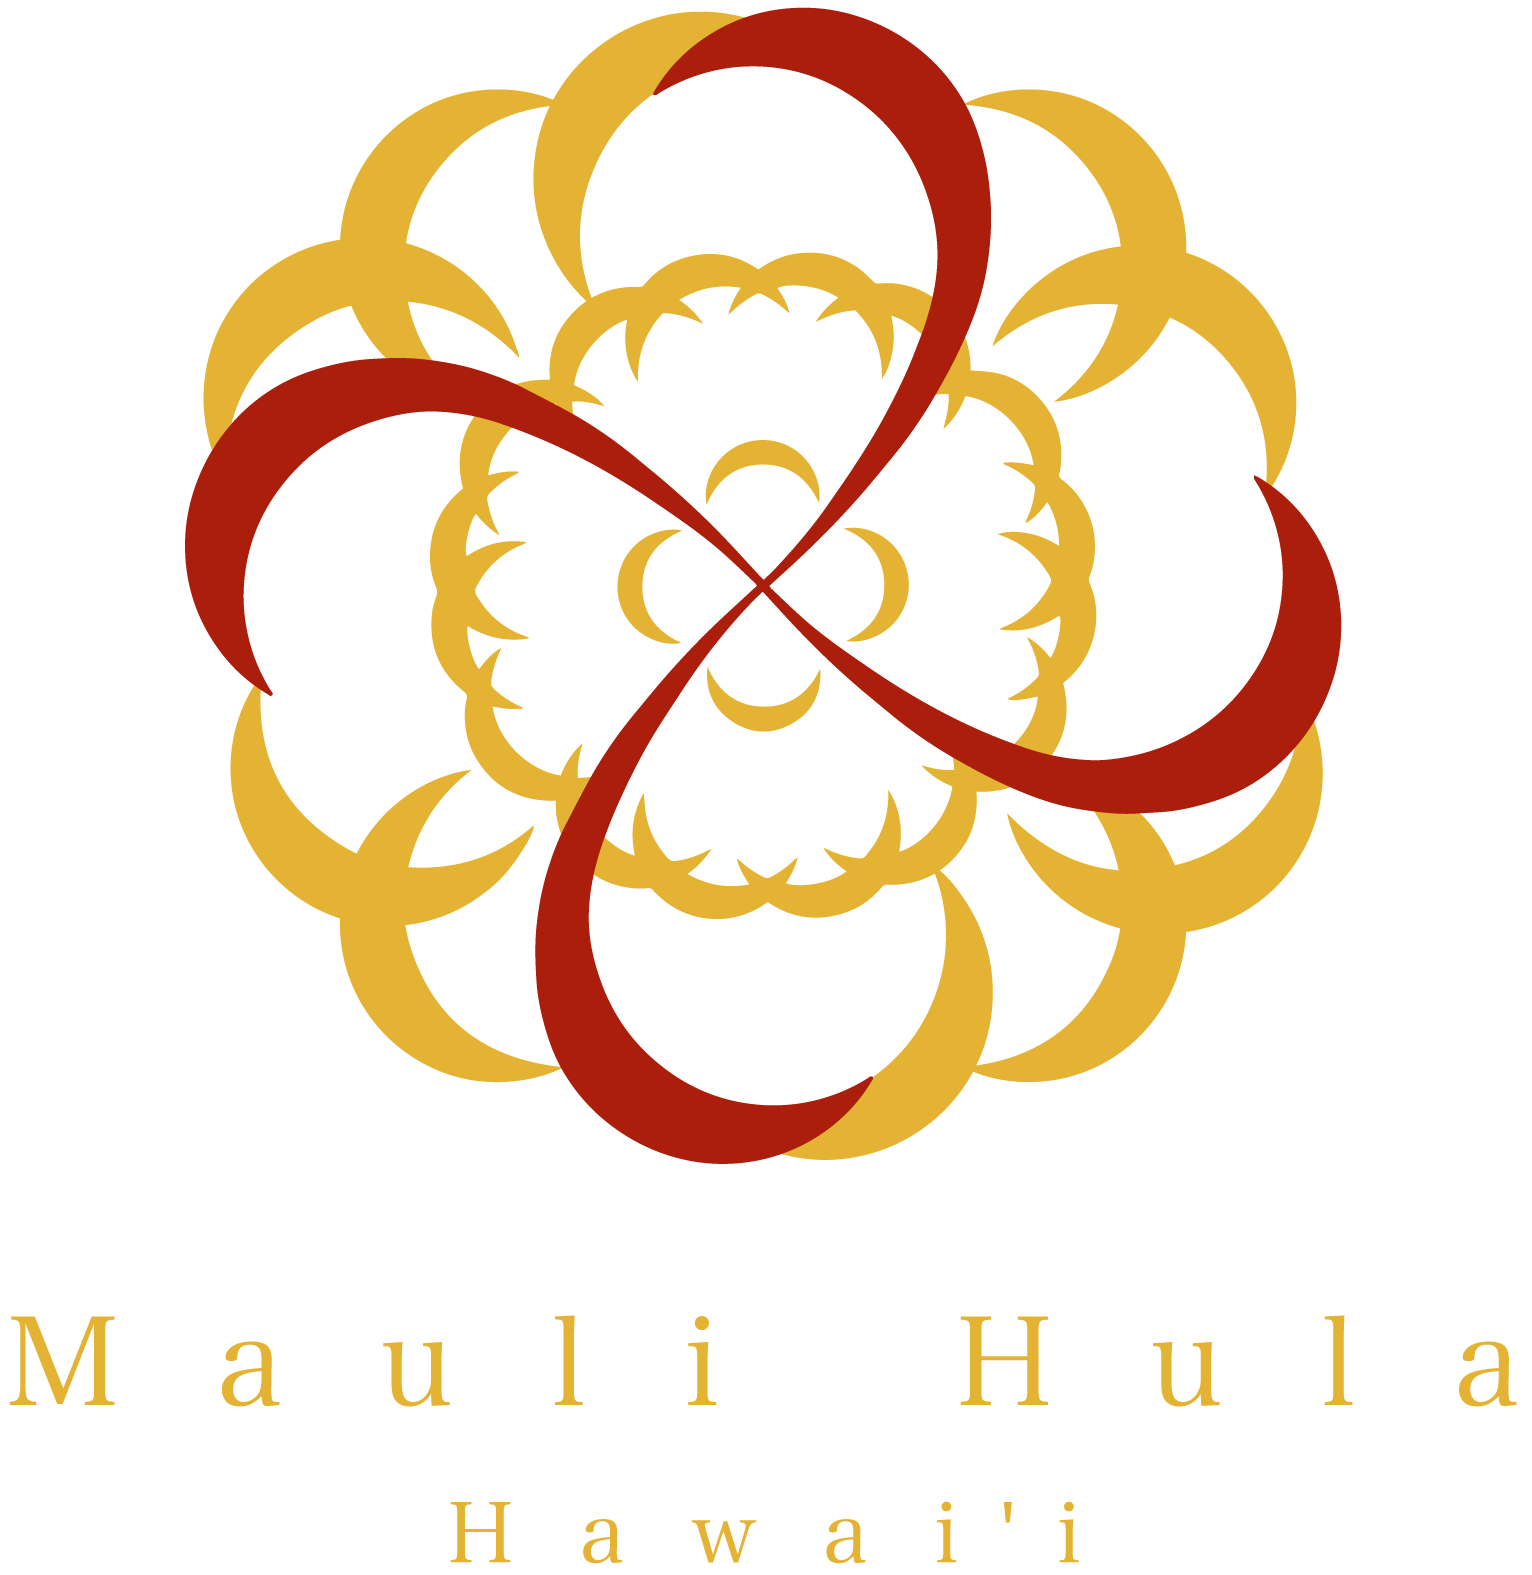 Mauli Hula Hawaiʻi